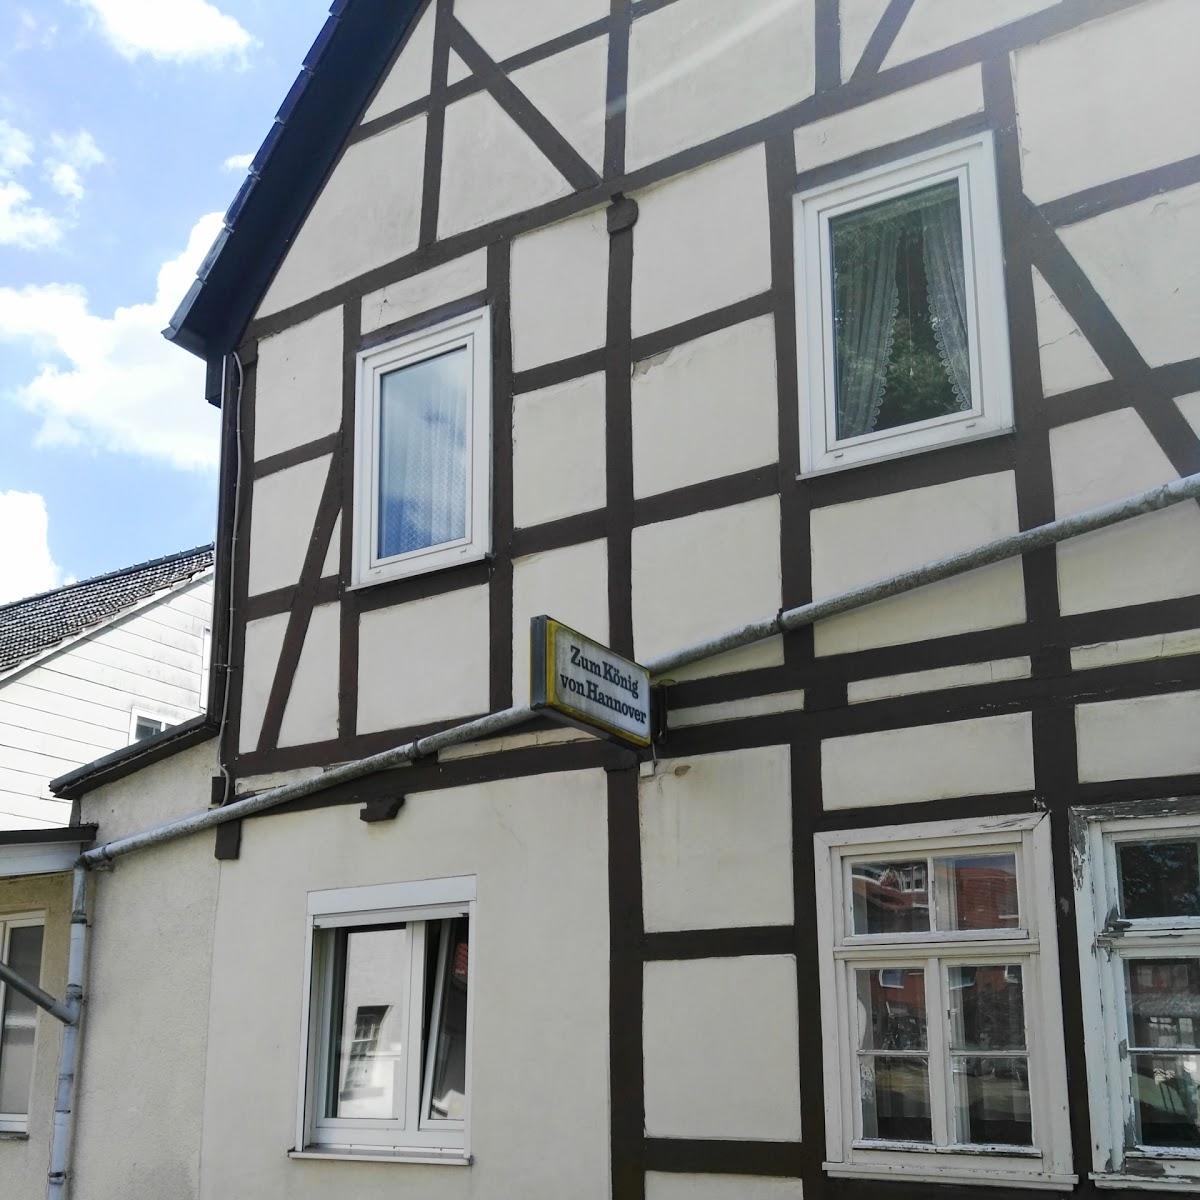 Restaurant "Gasthaus im   Rohrbachtal " in  Lichtenau